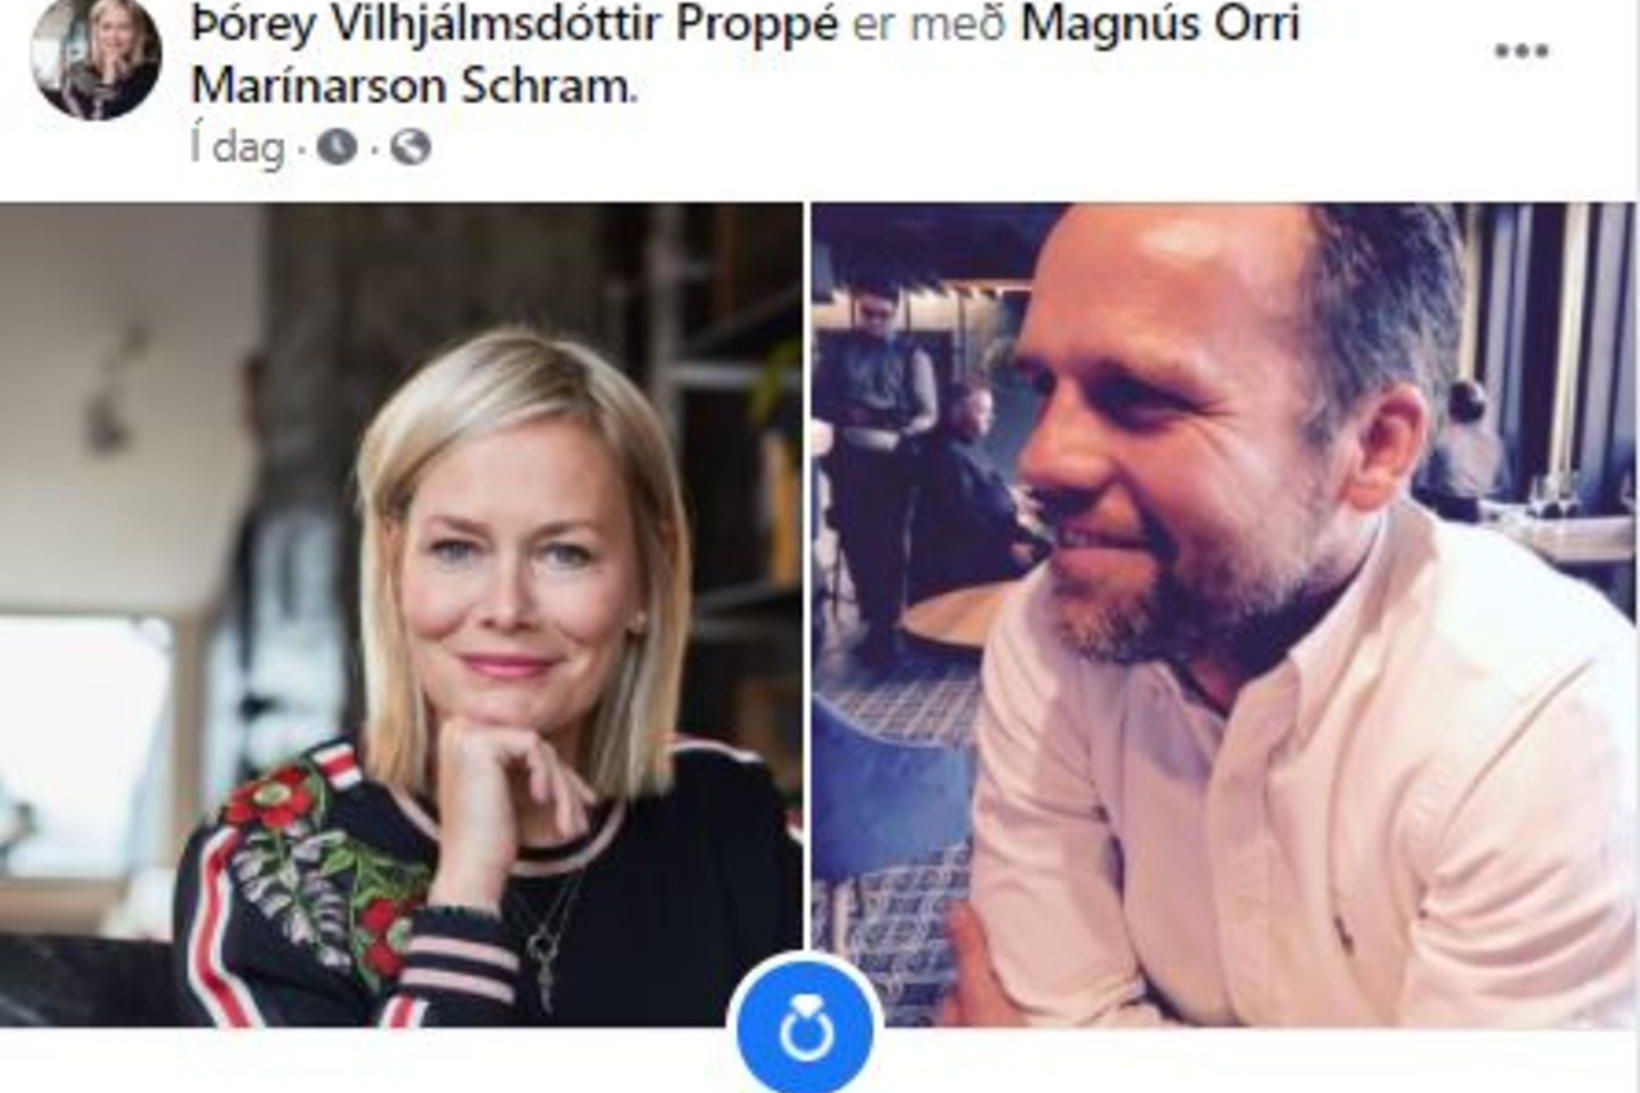 Þórey Vilhjálmsdóttir Proppé og Magnús Orri Schram.